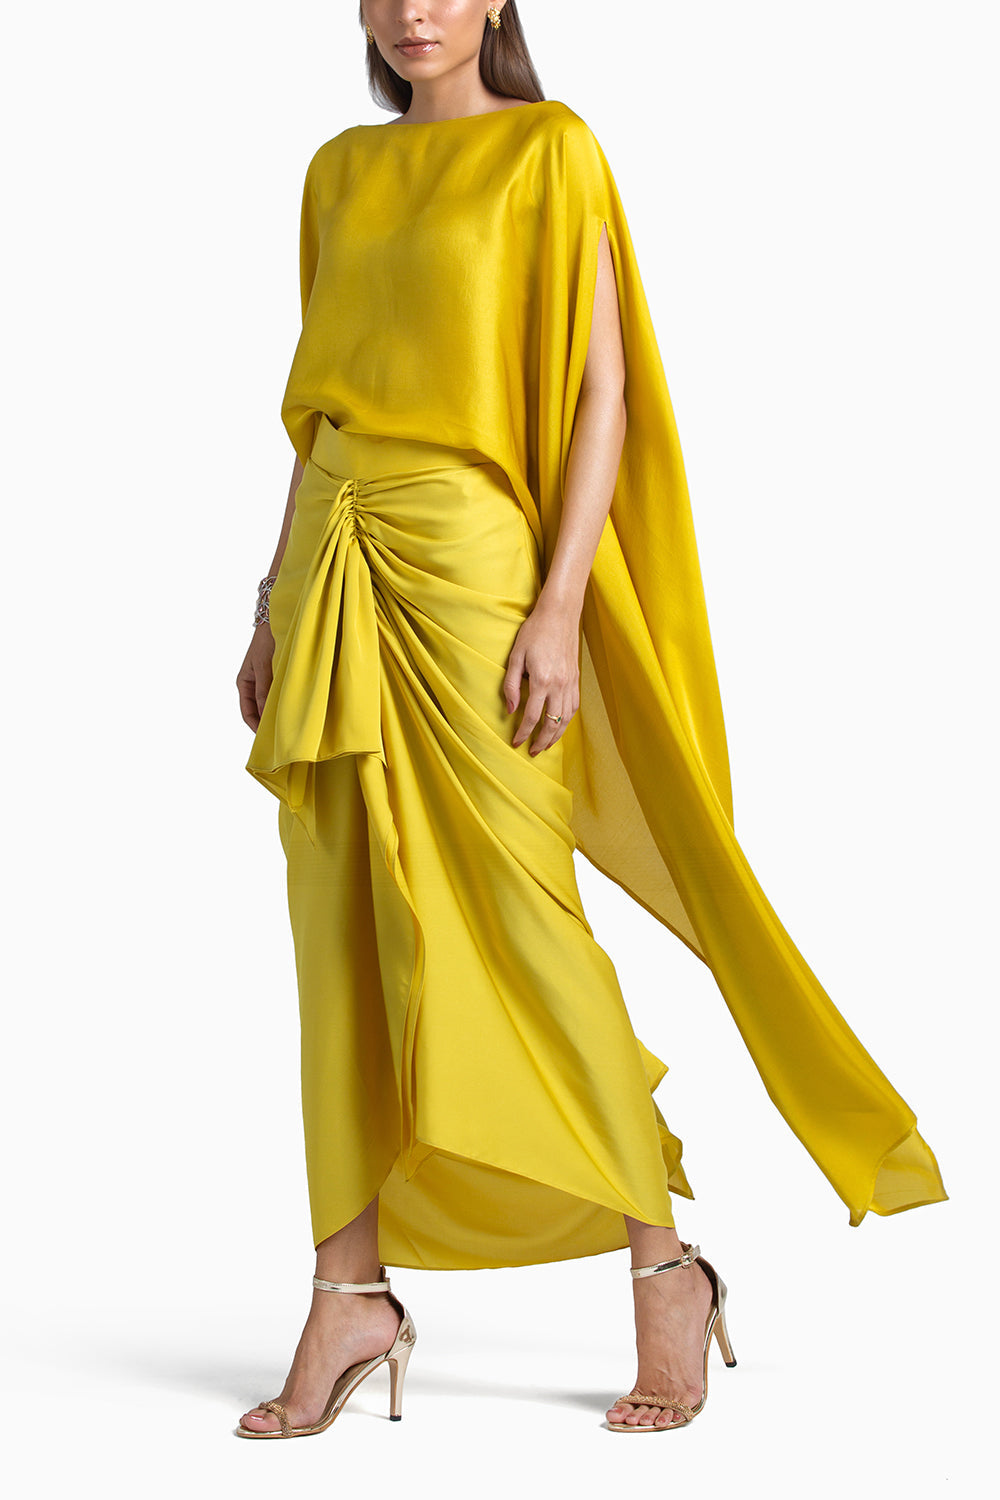 Lemon Samara Skirt